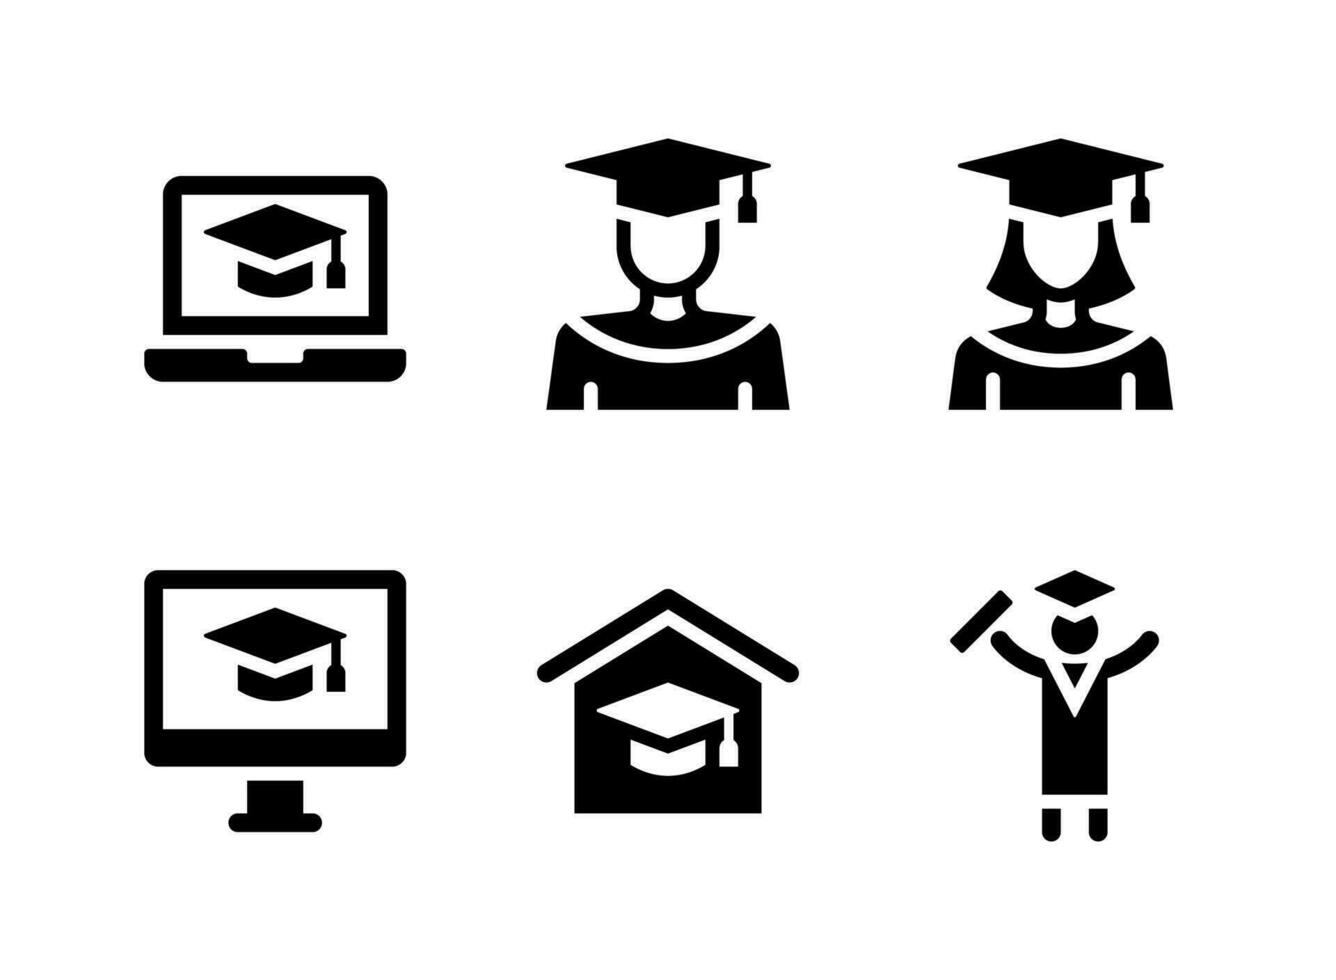 semplice set di icone solide vettoriali relative alla graduazione. contiene icone come apprendimento online, studente uomo, donna e altro ancora.